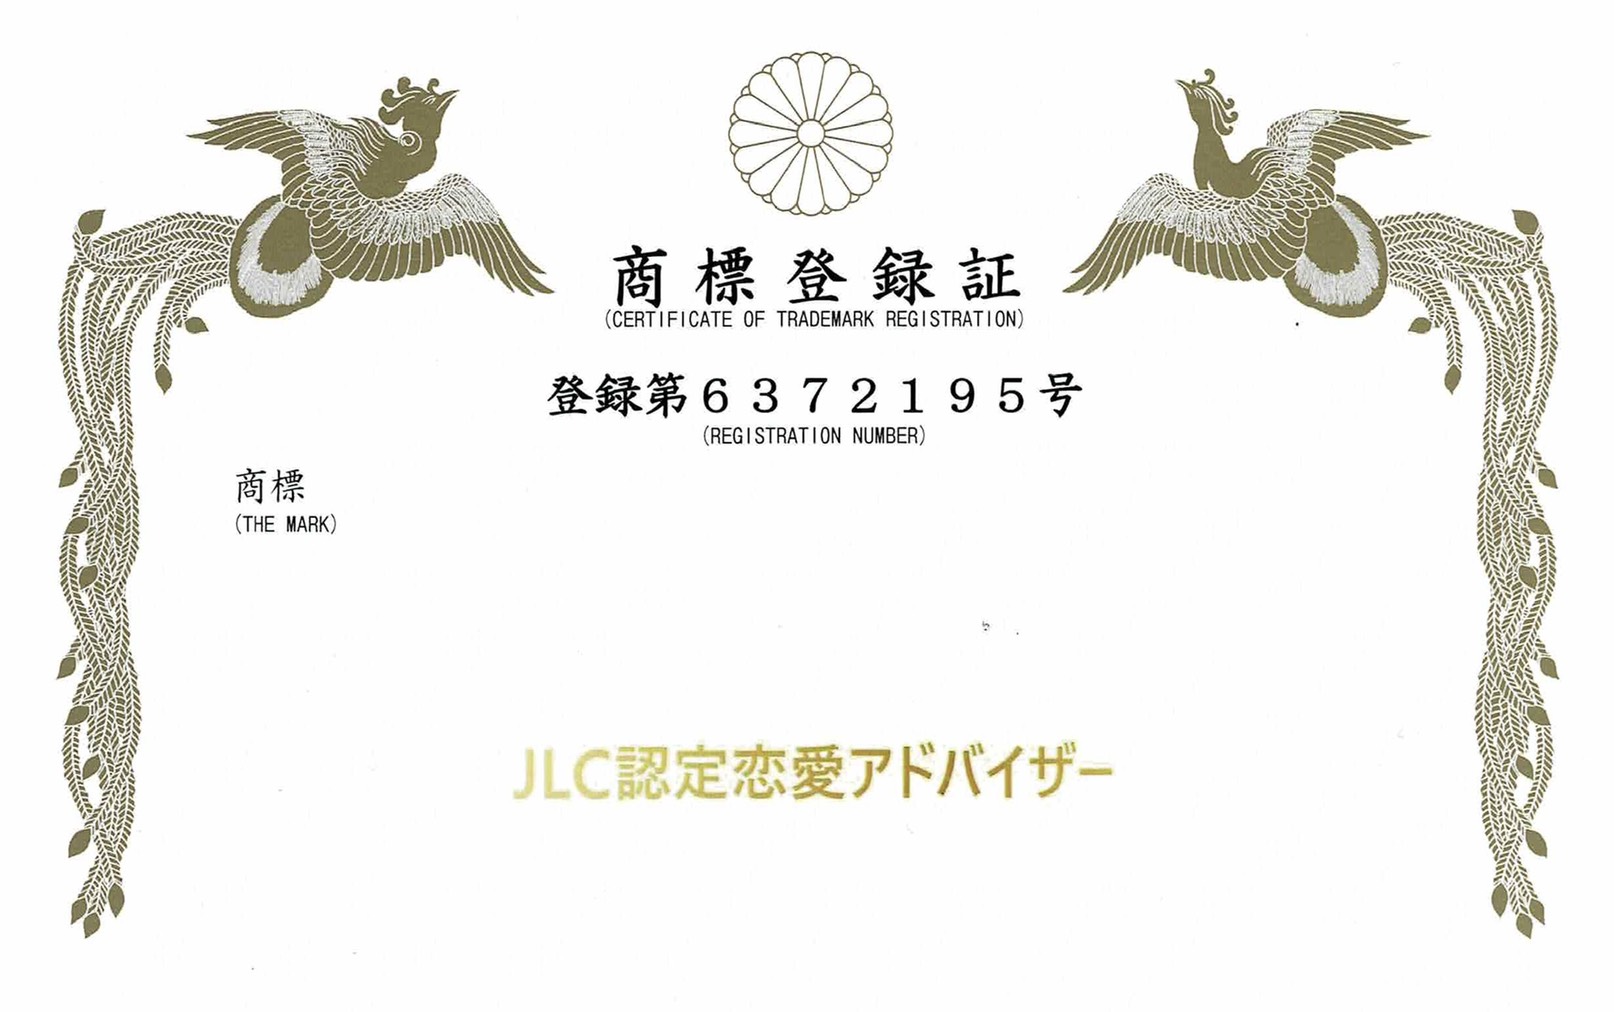 JLC認定恋愛アドバイザー®︎商標登録